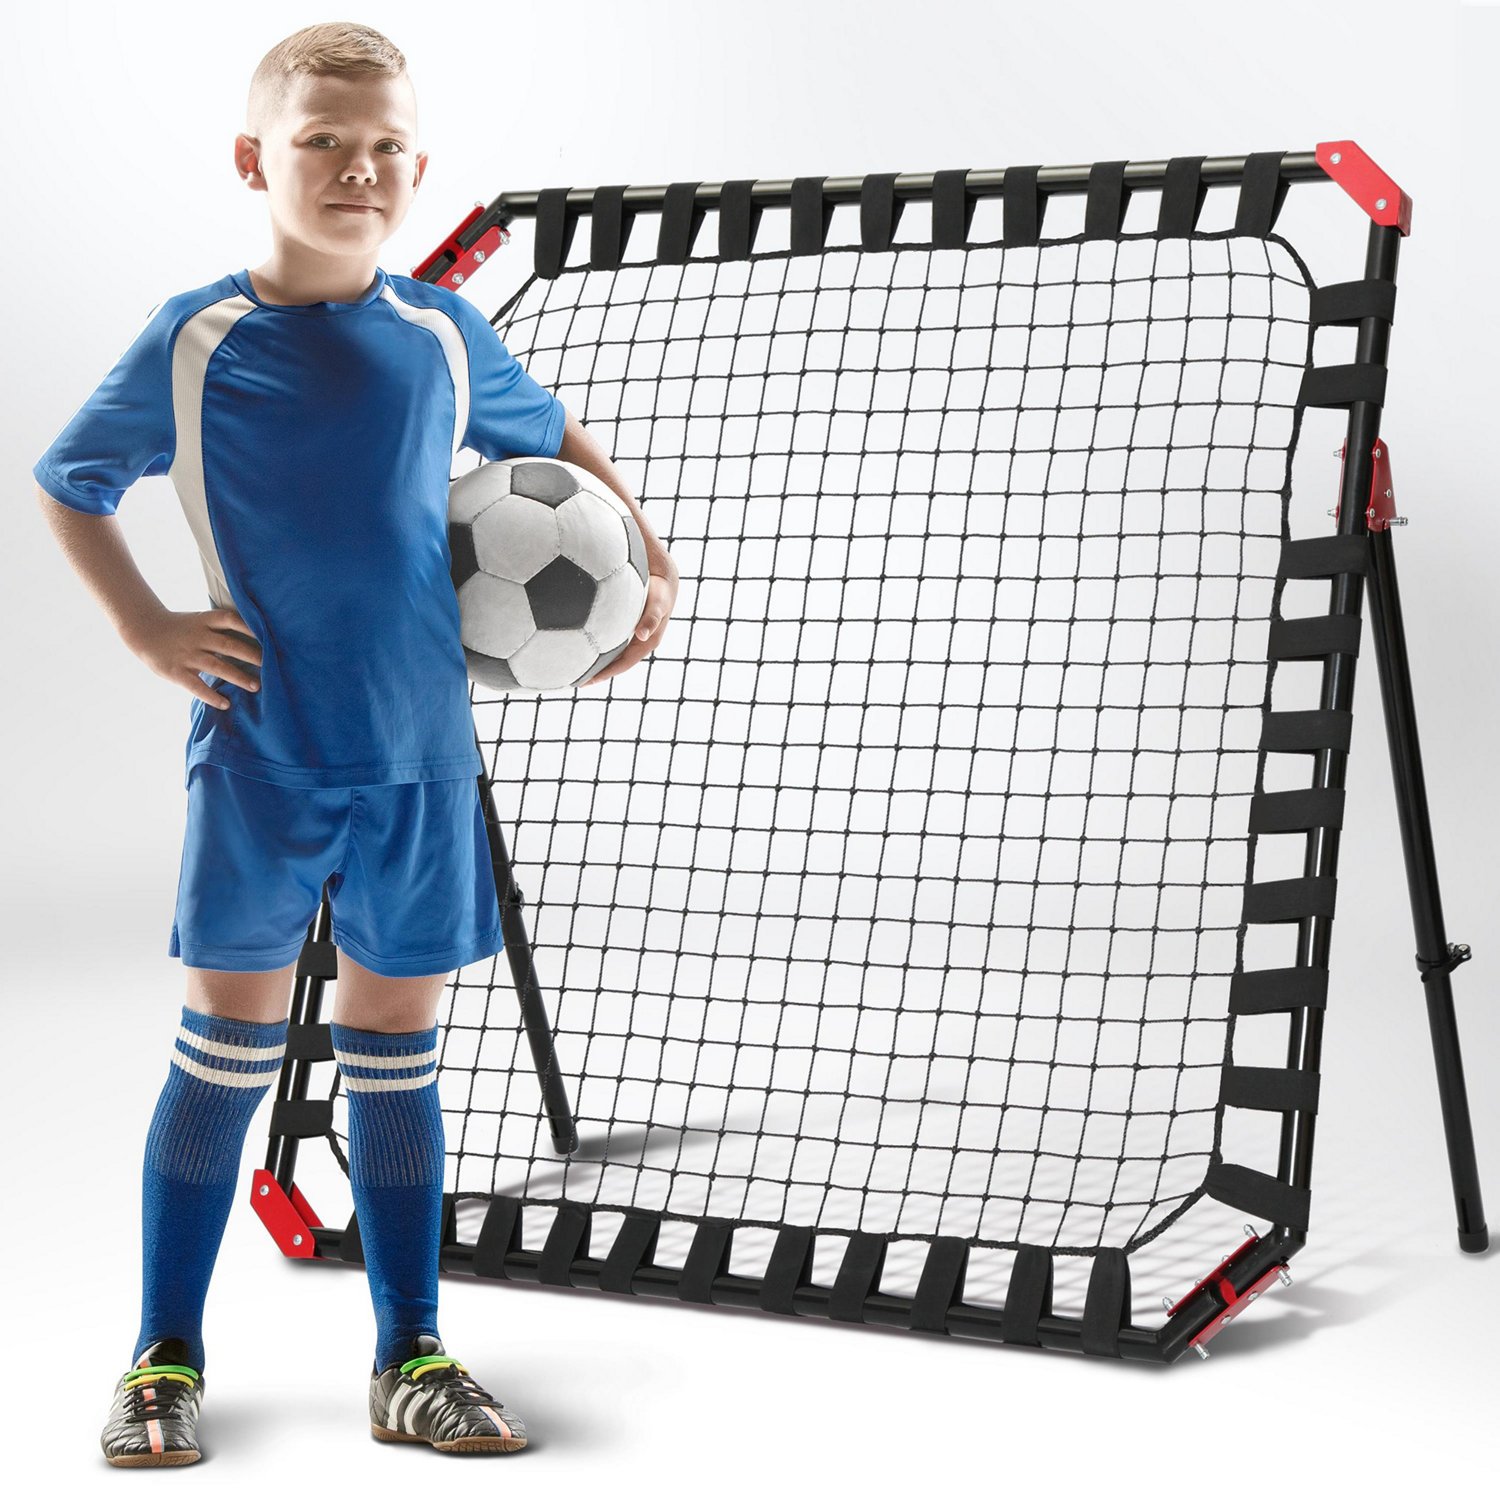 NetPlayz 4 ft x 4 ft Soccer Rebounder Net